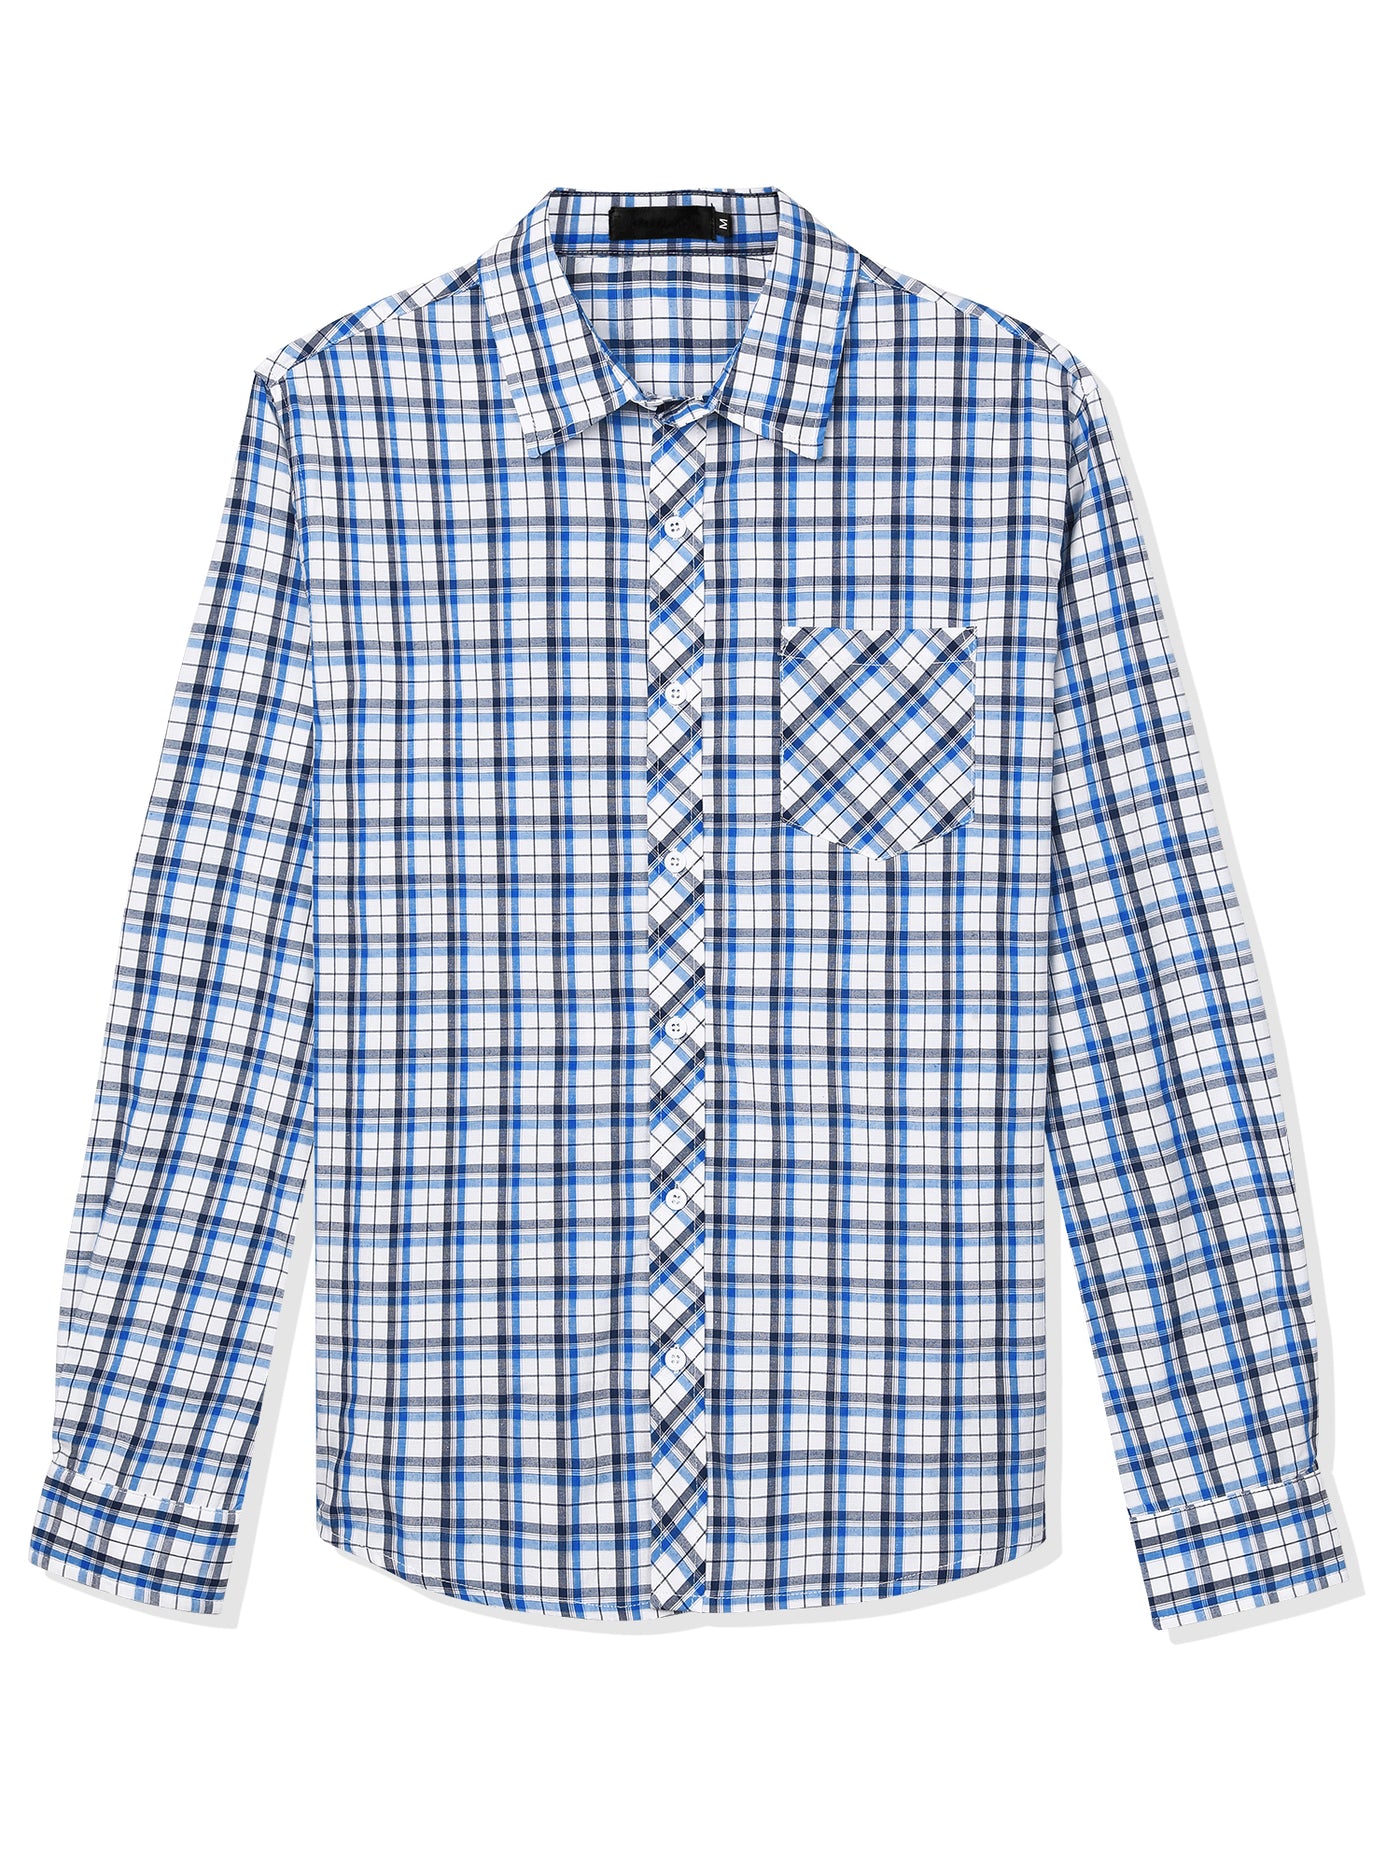 Bublédon Casual Cotton Plaid Button Lapel Long Sleeve Shirts